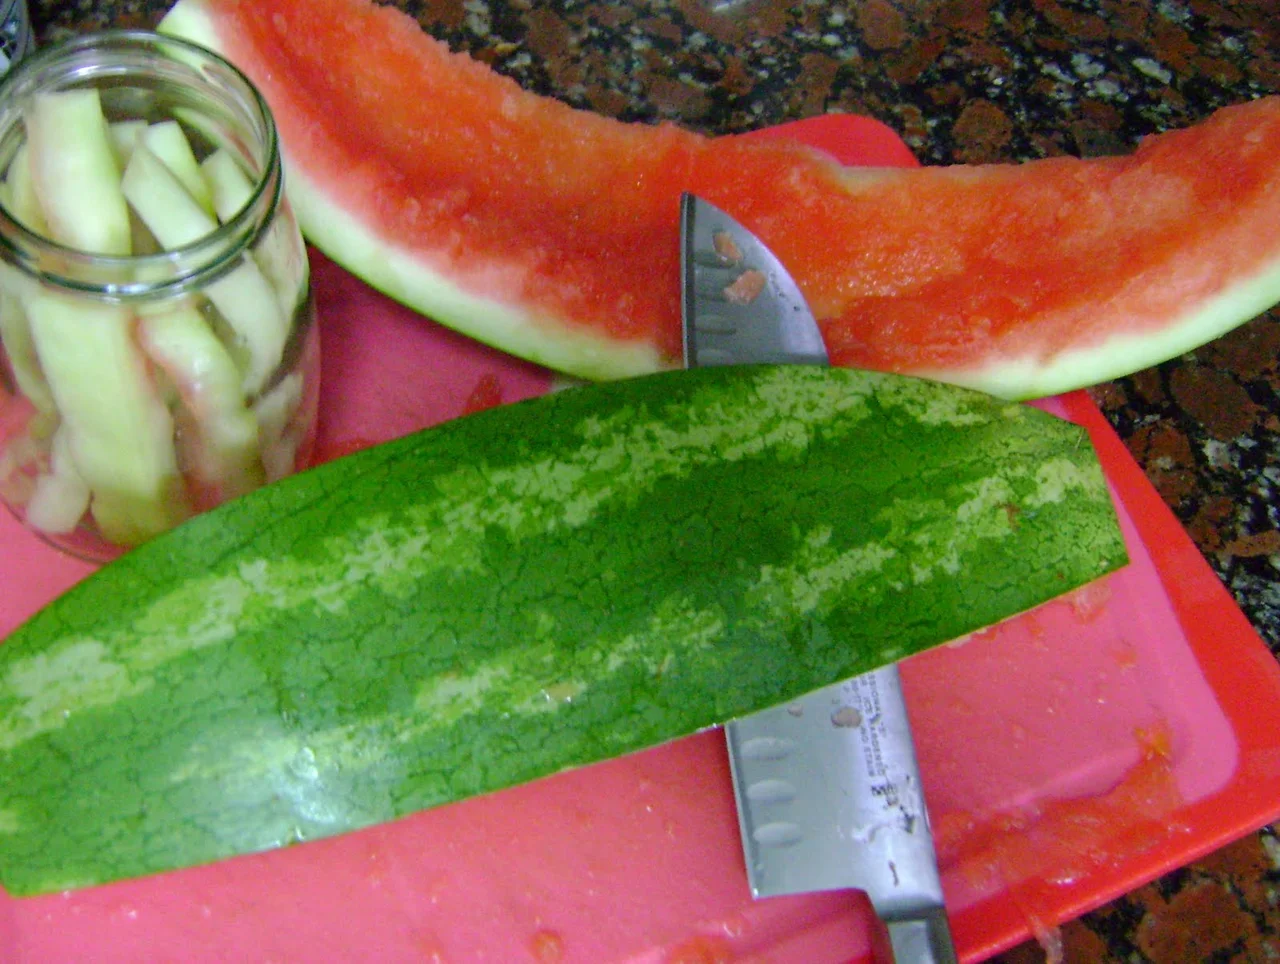 Jakie korzyści przynosi jedzenie białej i zielonej części arbuza?